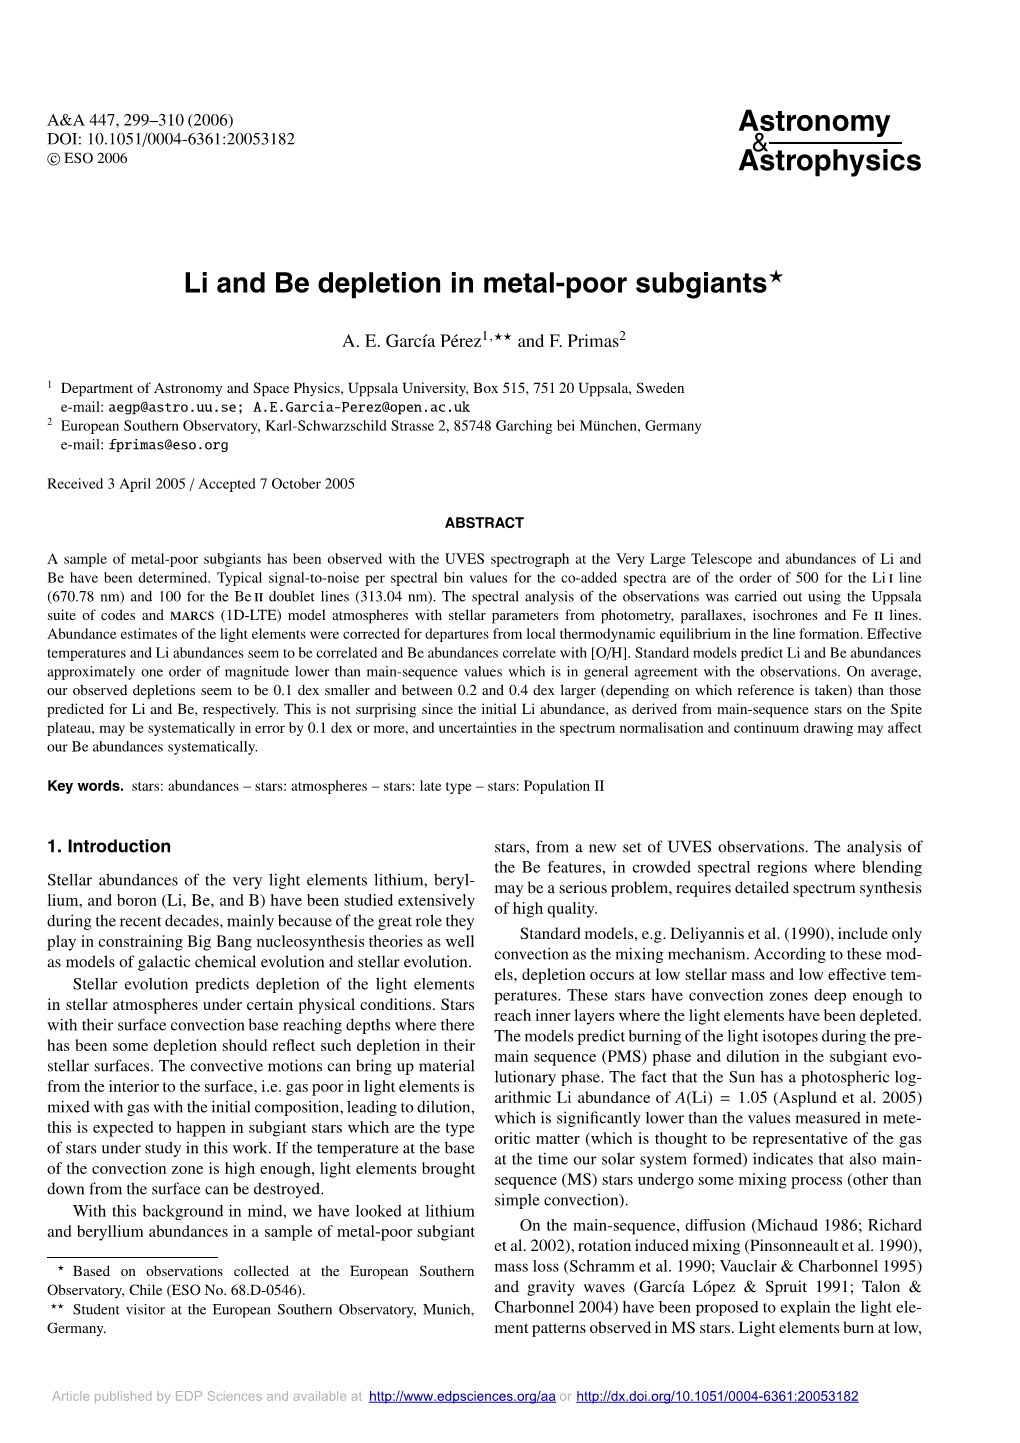 Li and Be Depletion in Metal-Poor Subgiants